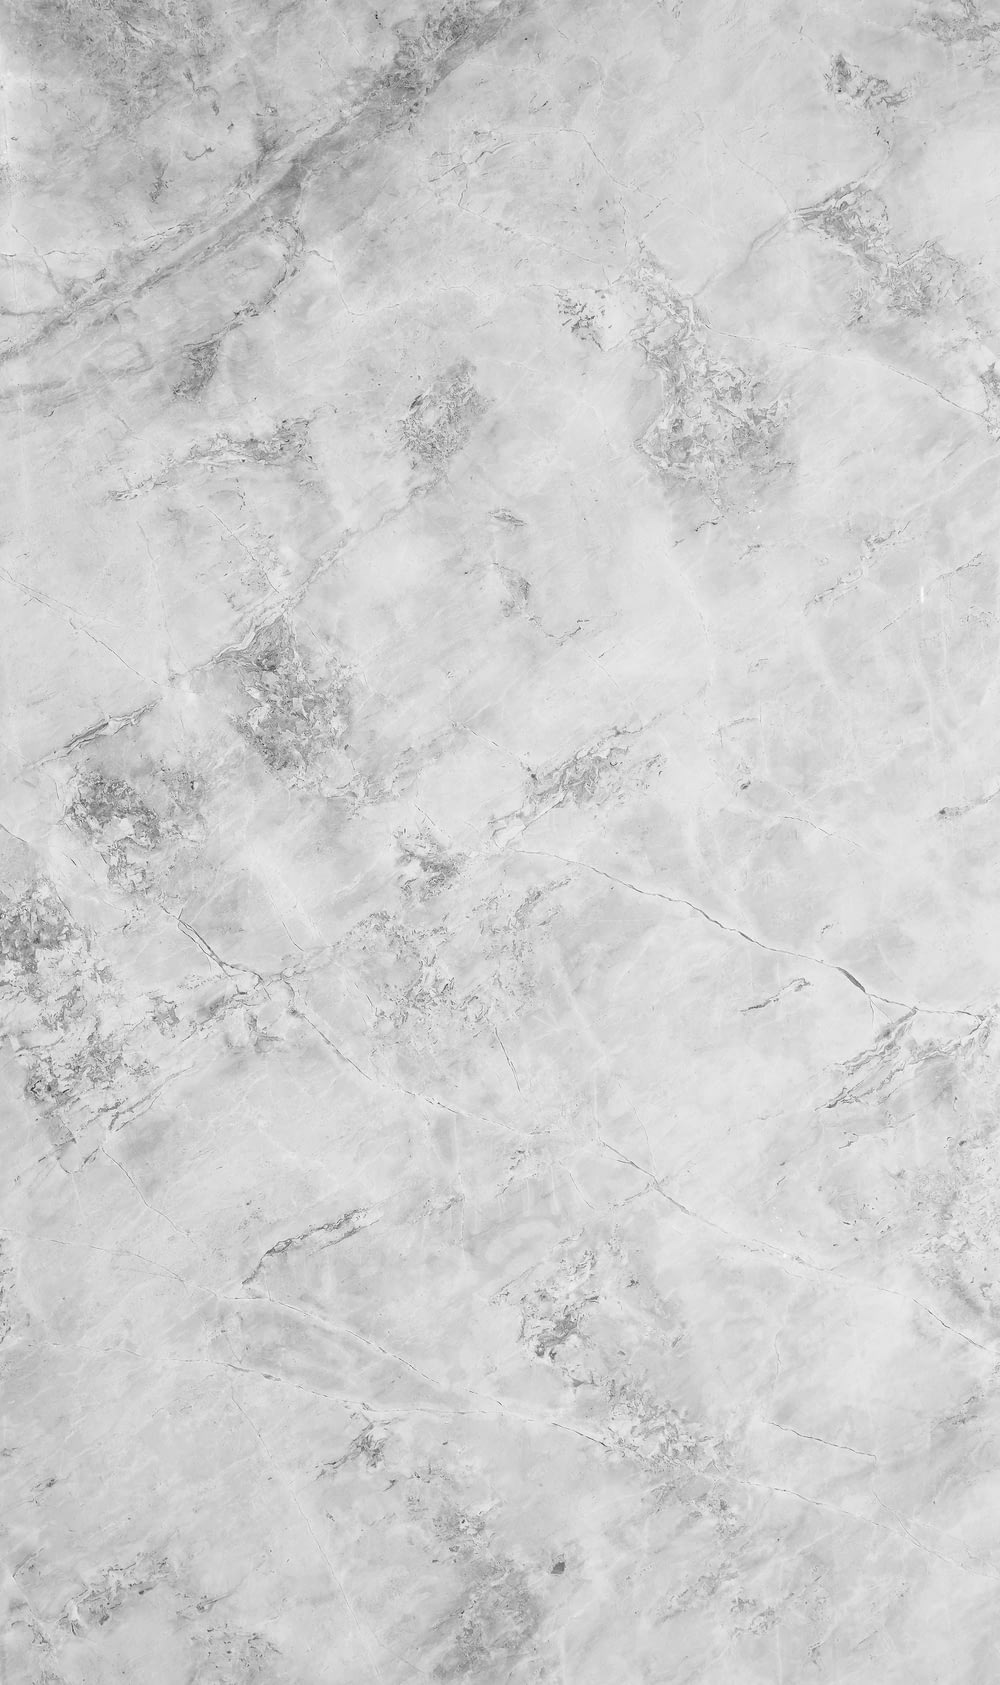 大理石の表面の白黒写真